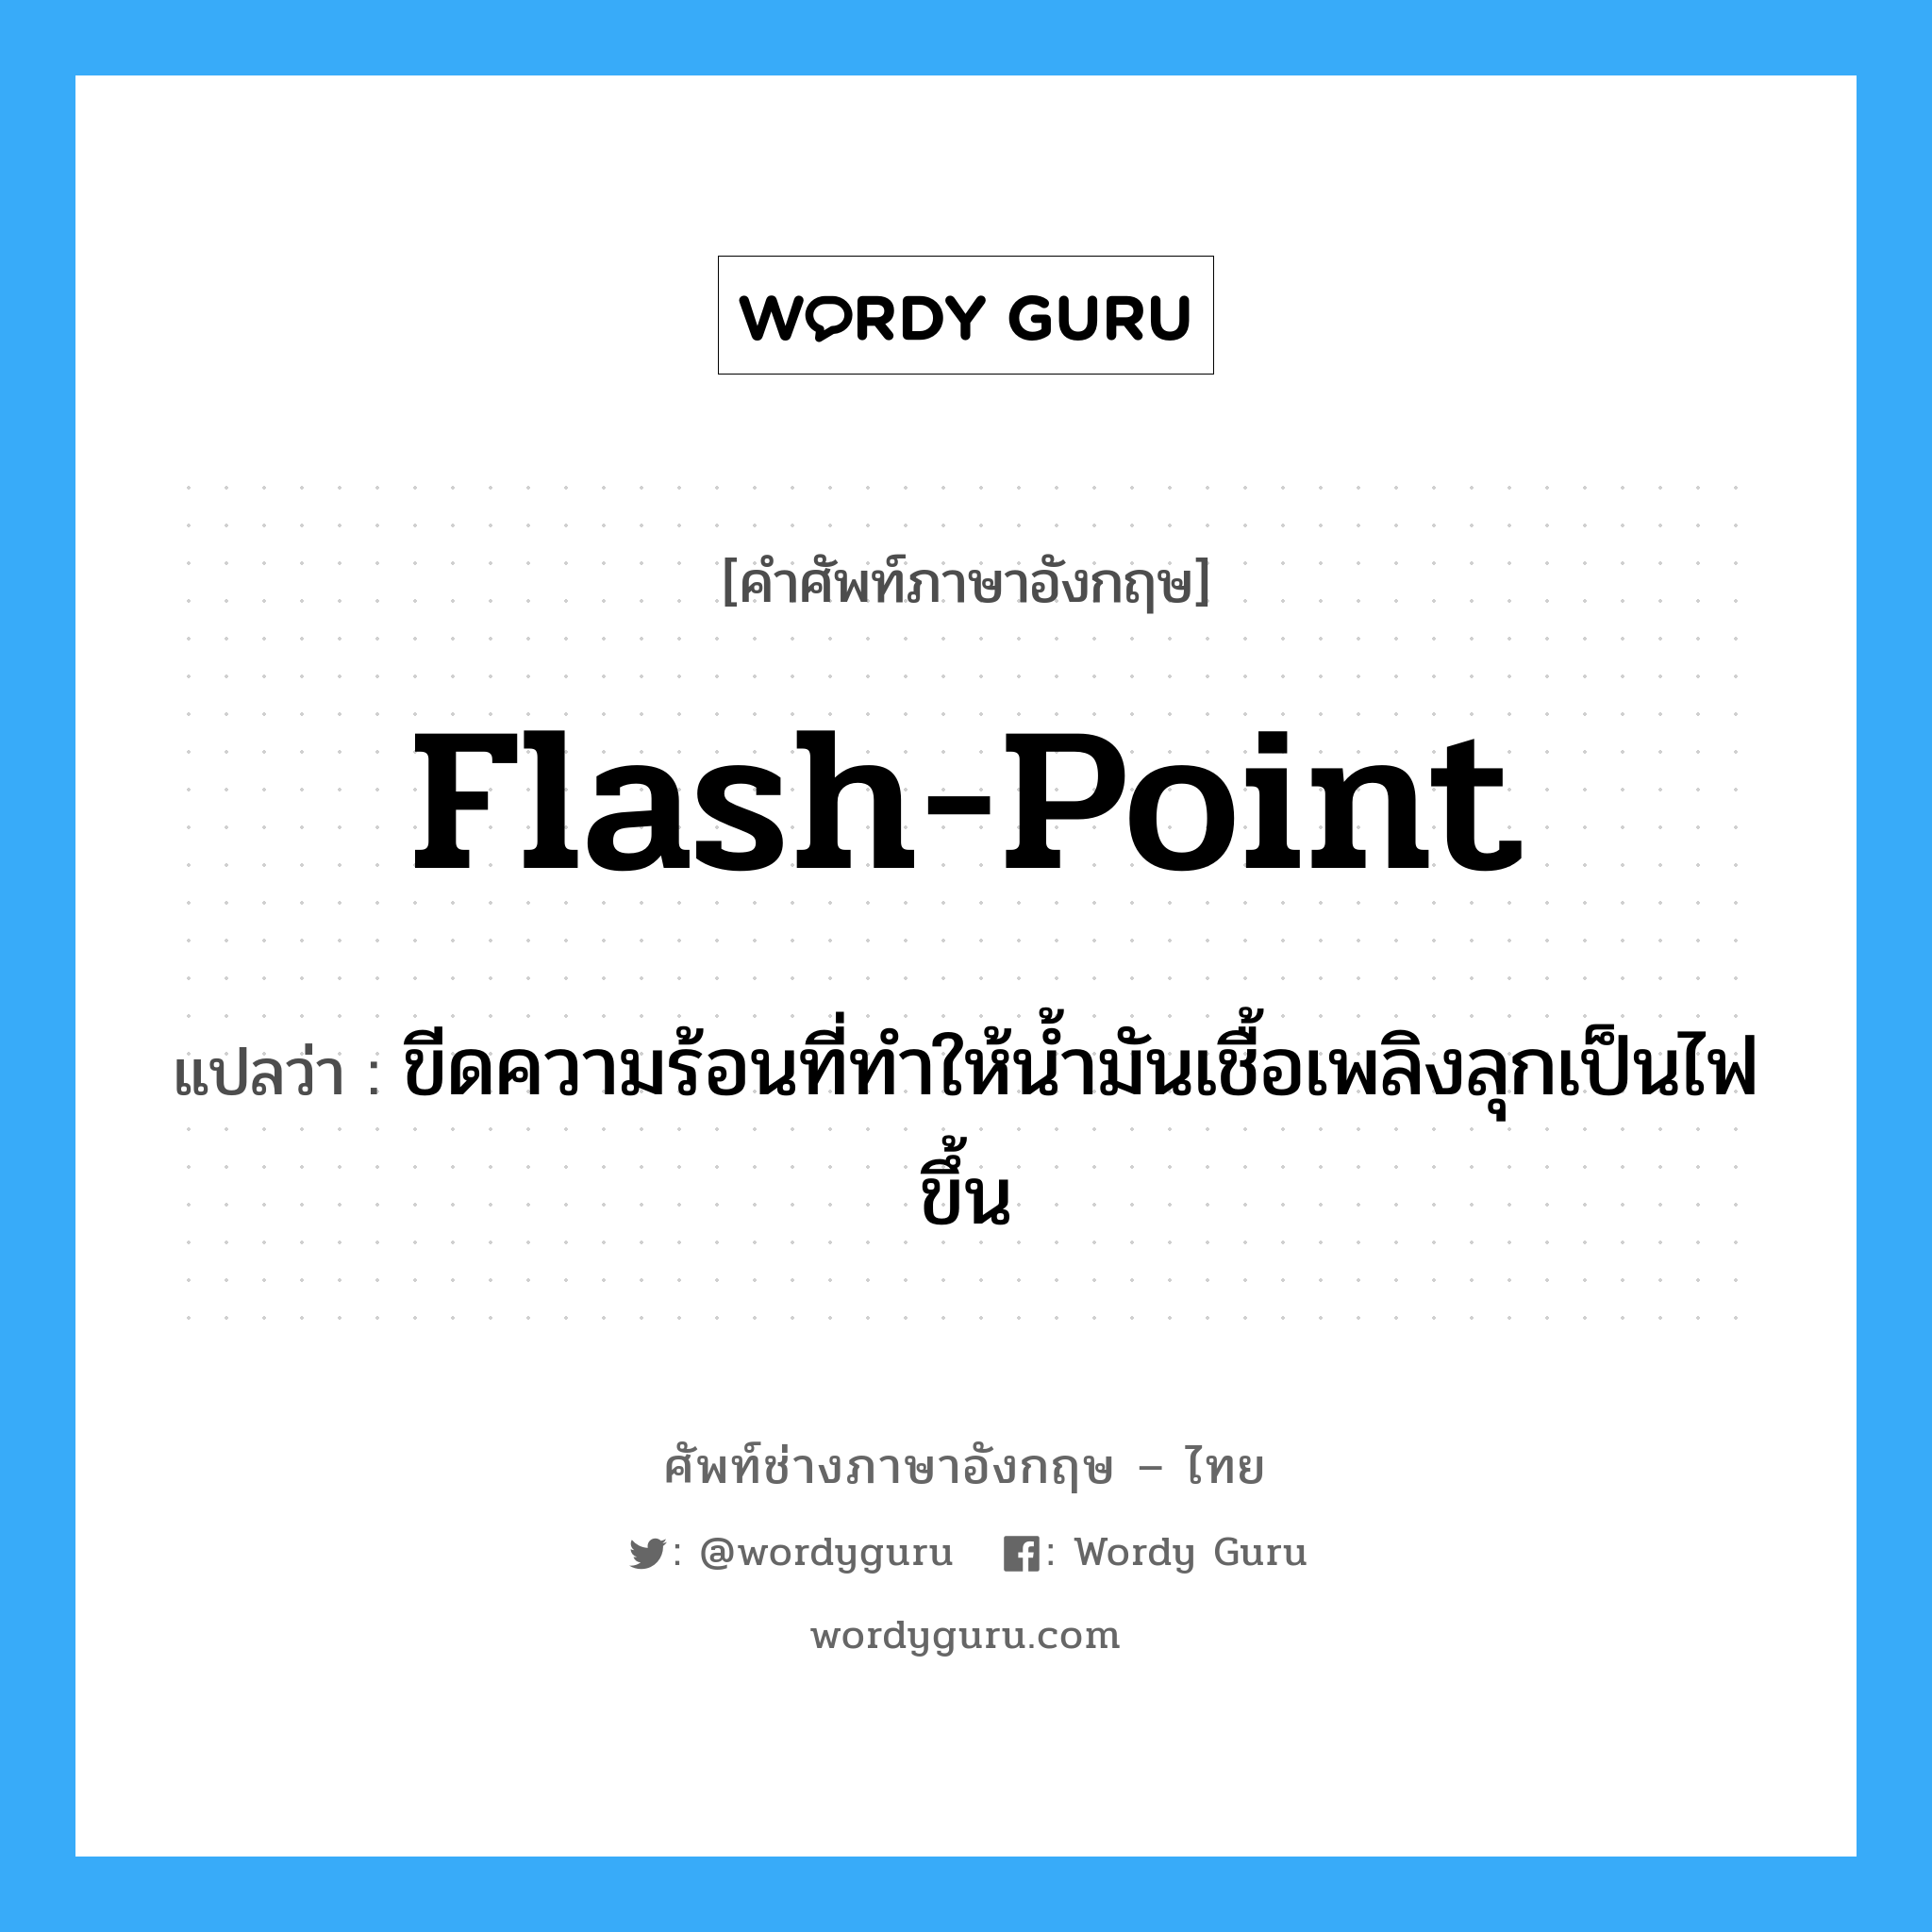 flash point แปลว่า?, คำศัพท์ช่างภาษาอังกฤษ - ไทย flash-point คำศัพท์ภาษาอังกฤษ flash-point แปลว่า ขีดความร้อนที่ทำให้น้ำมันเชื้อเพลิงลุกเป็นไฟขึ้น